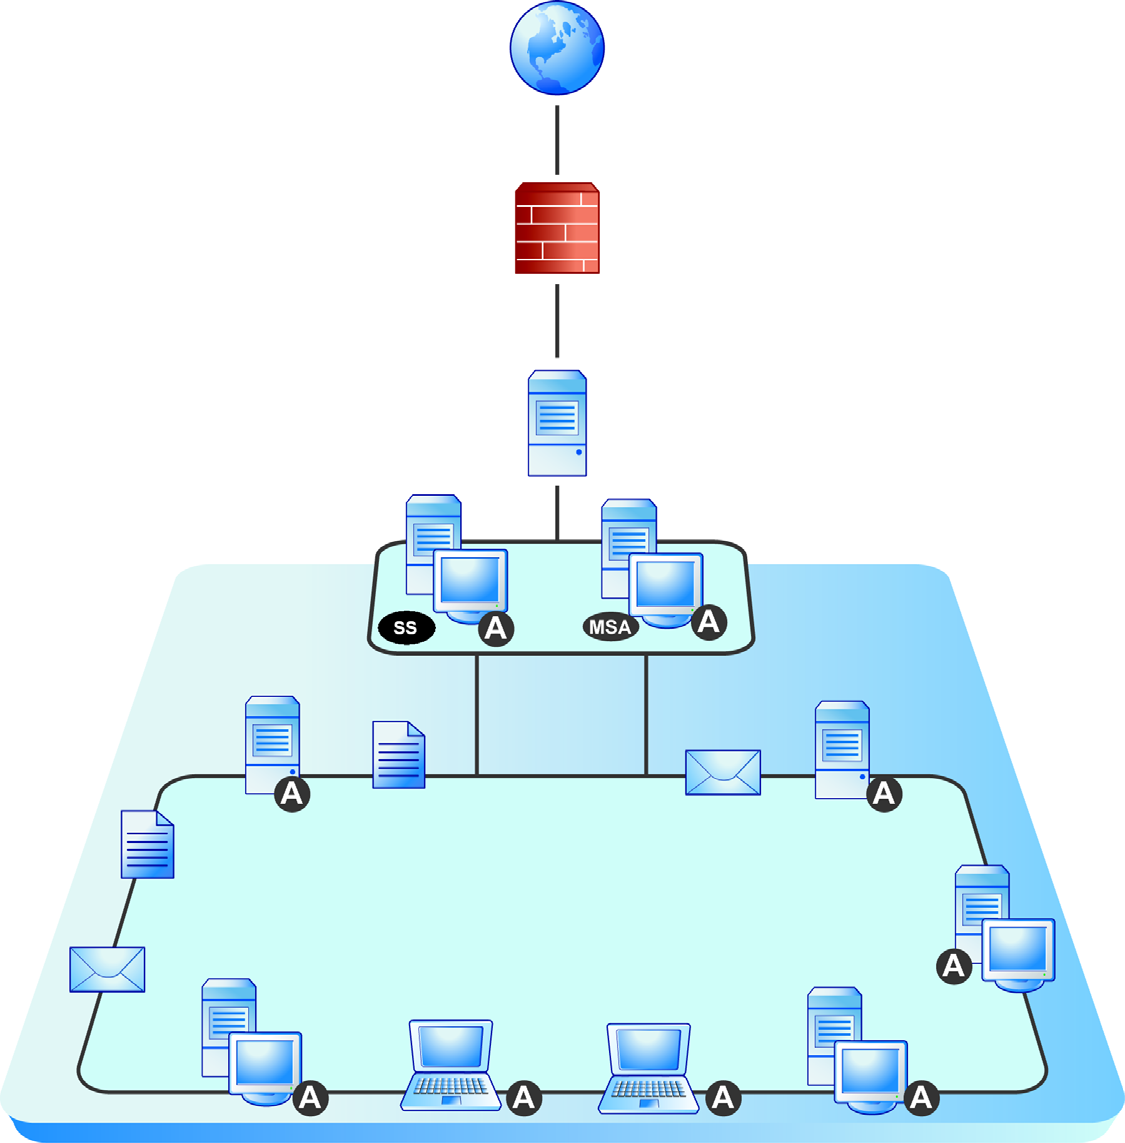 Guía de instalación de Trend Micro Worry-Free Business Security 6.0 En la siguiente ilustración se muestra cómo se instalan los componentes de WFBS en una red típica.